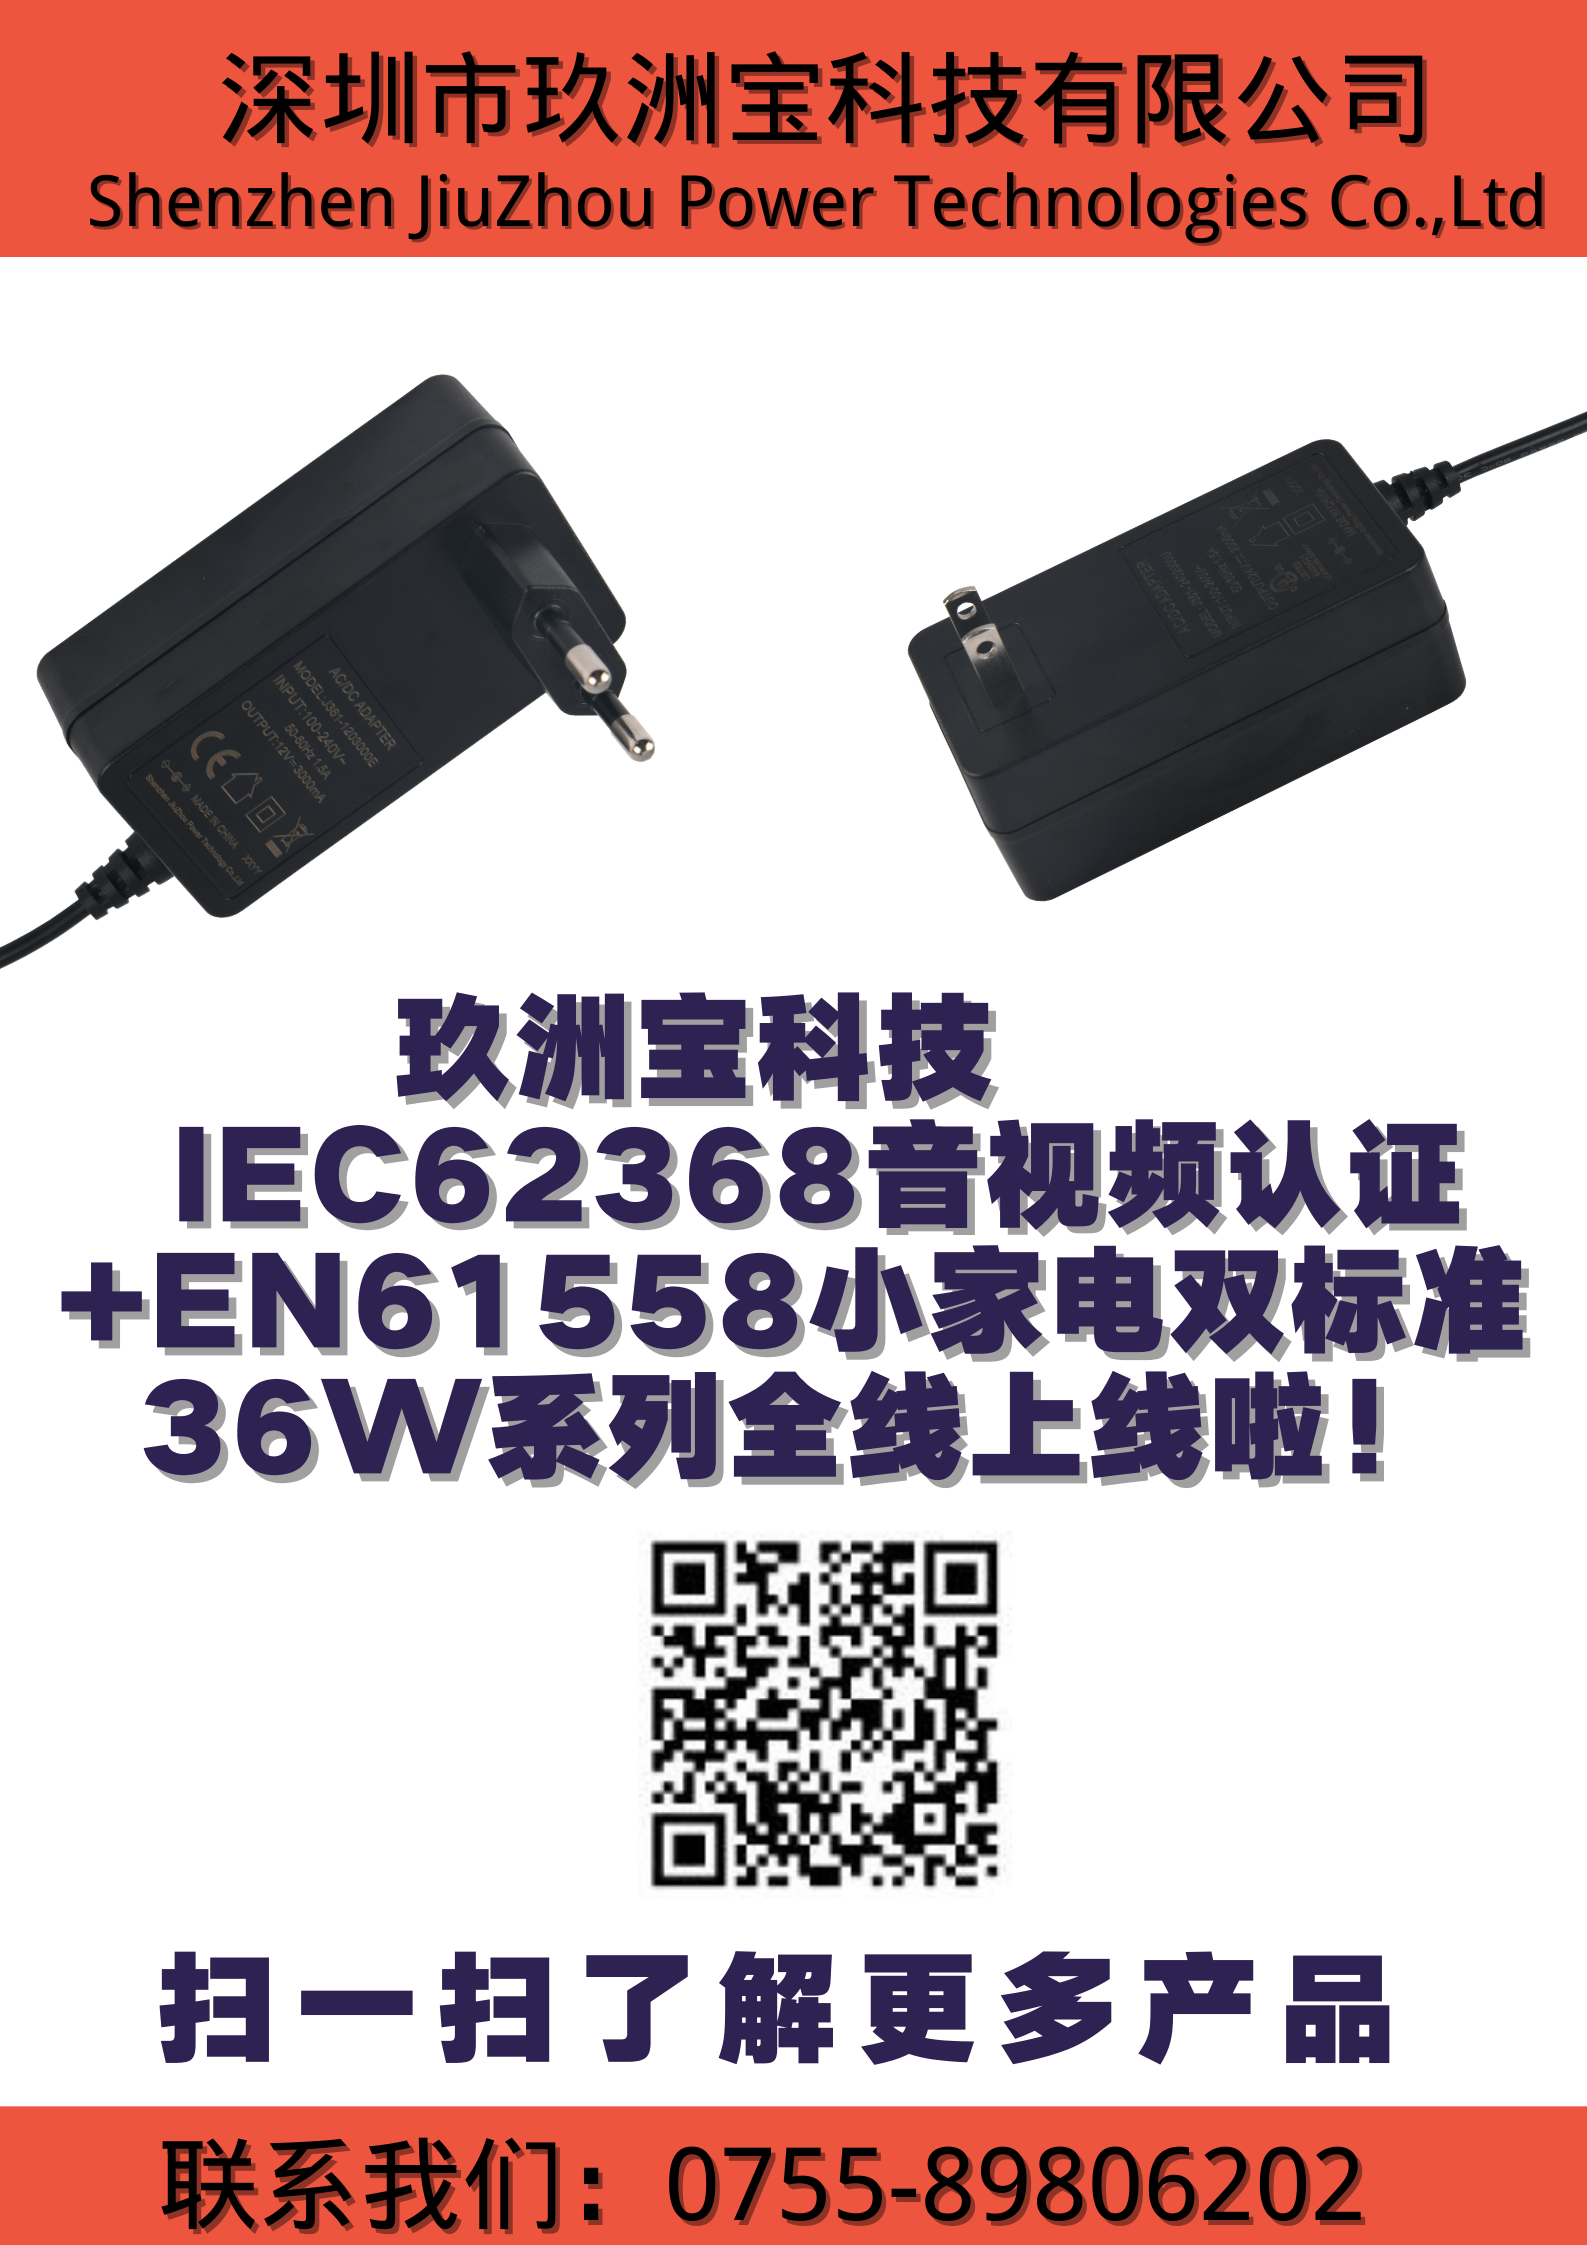 玖洲宝科技IEC62368音视频认证+EN61558小家电双标准36W全线上线啦！